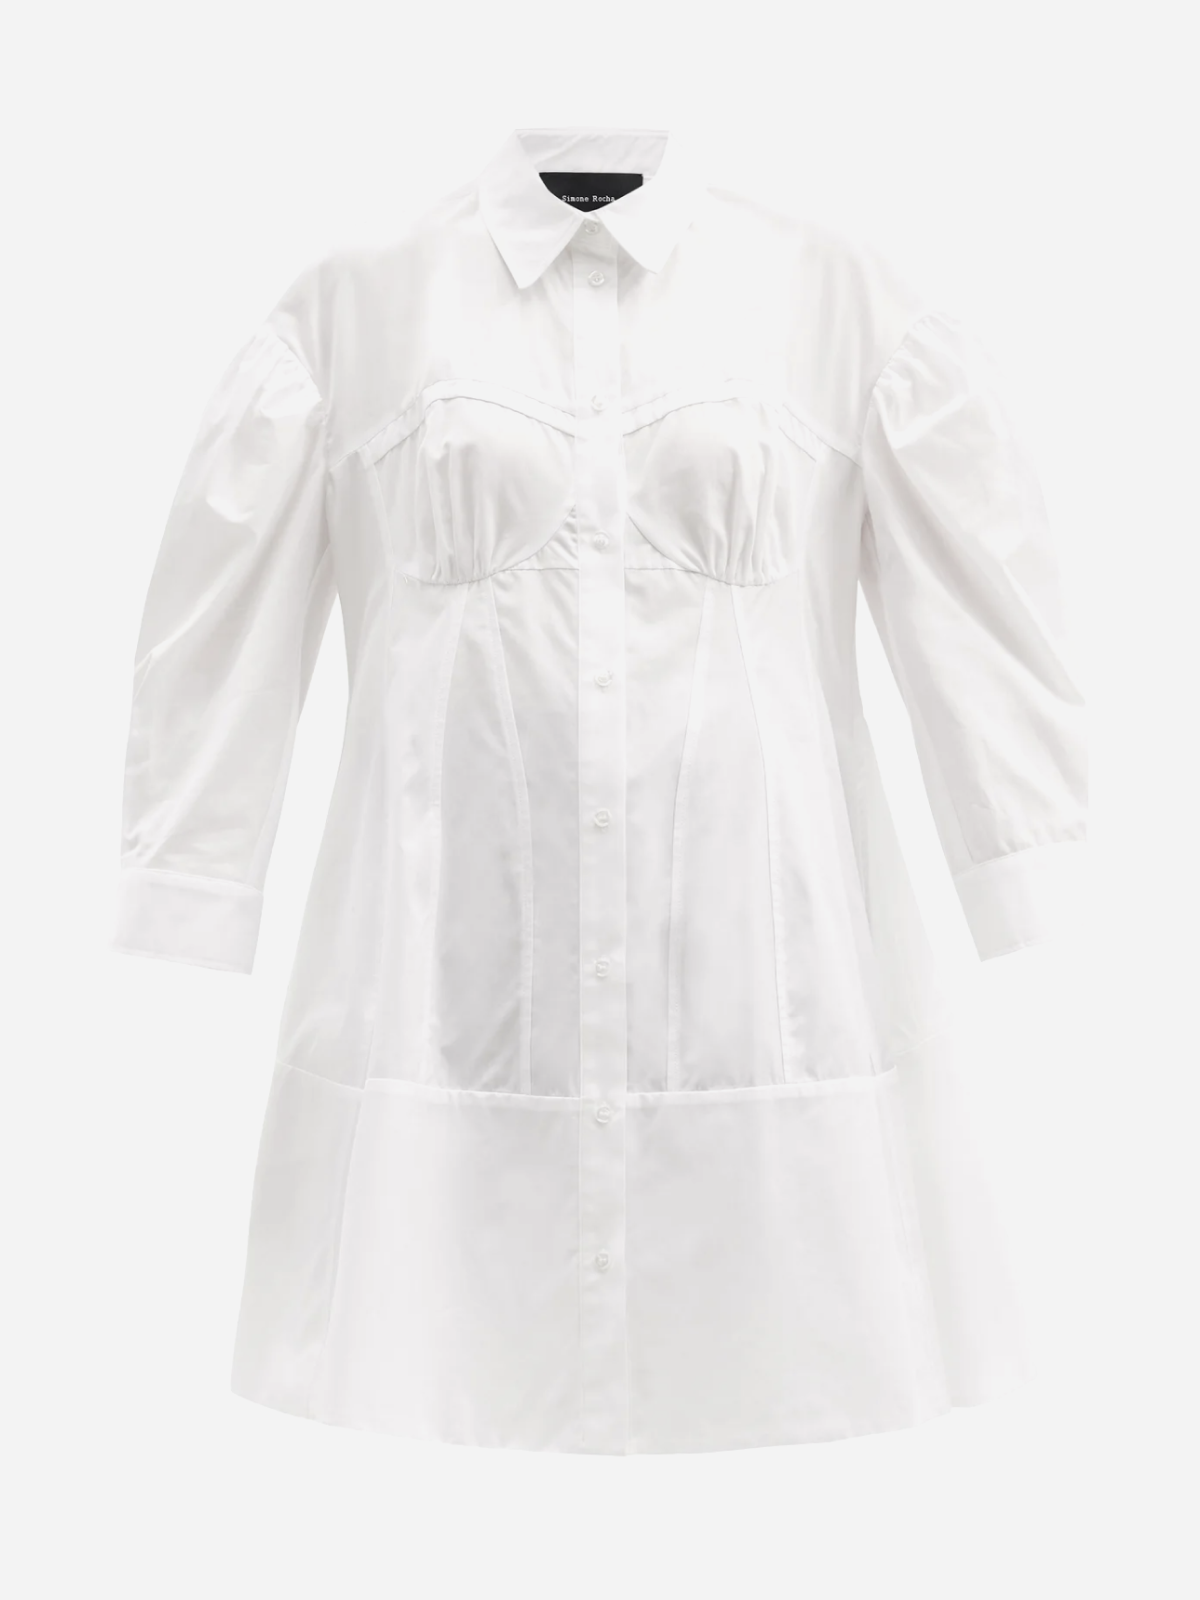 На свадьбу, после свадьбы или просто так: 20 лаконичных белых платьев на лето (фото 19)